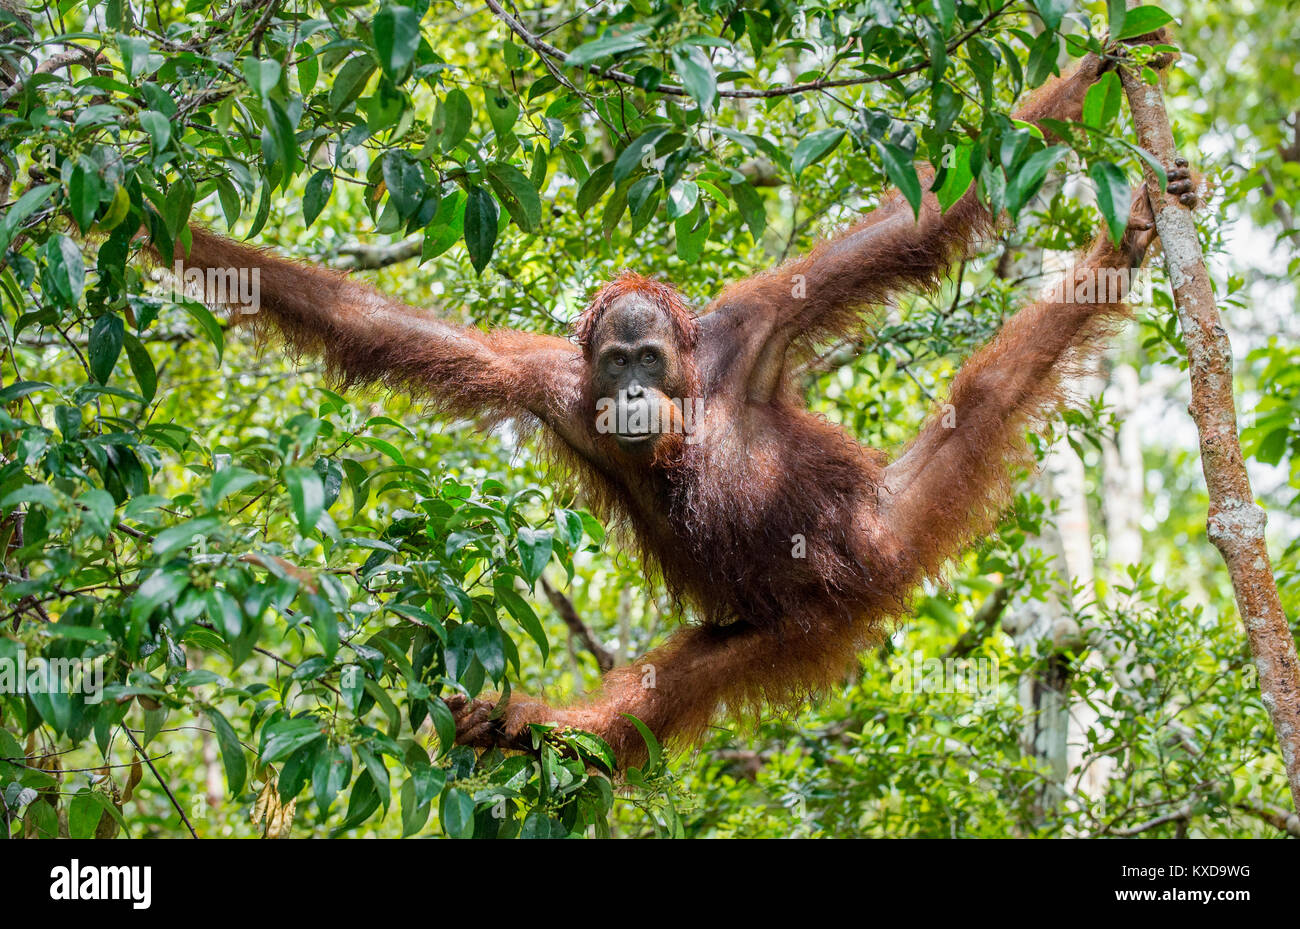 Great Ape sur l'arbre. L'orang-outan de Bornéo Central ( Pongo pygmaeus wurmbii ) dans l'habitat naturel. La nature sauvage dans la forêt tropicale de Bornéo. Banque D'Images